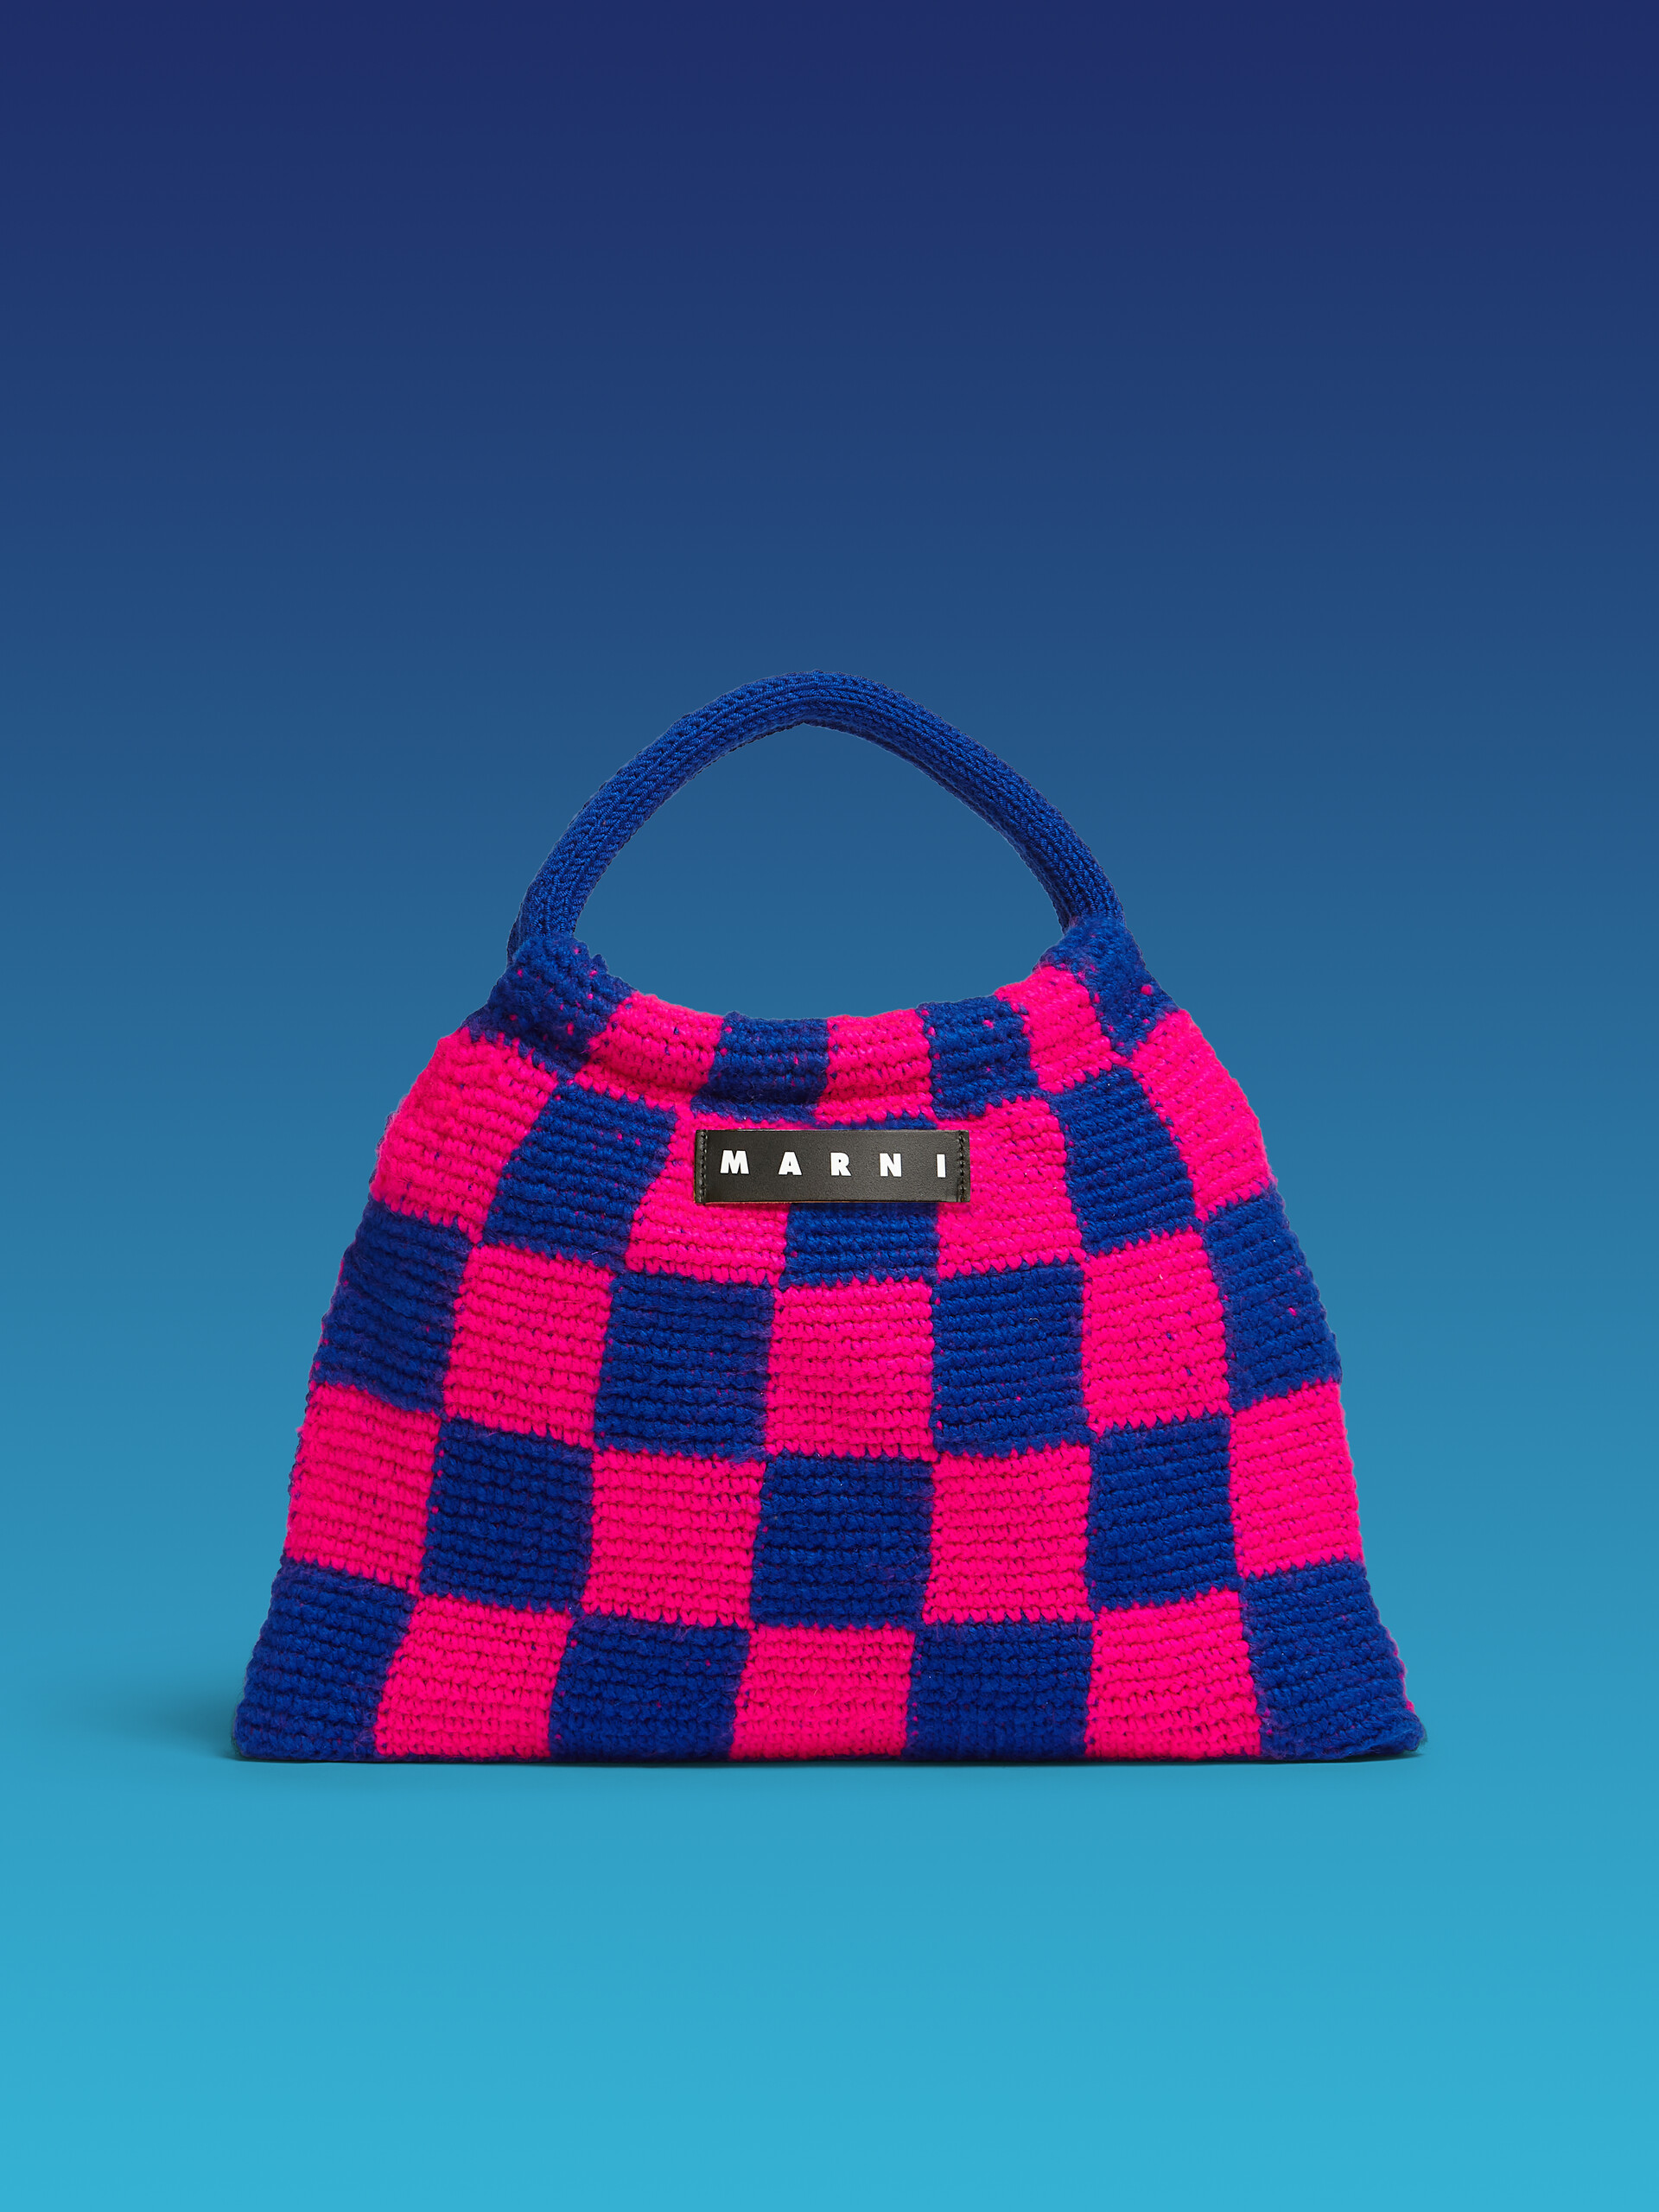 Sac MARNI MARKET GRANNY rose et bleu réalisé au crochet - Sacs cabas - Image 1